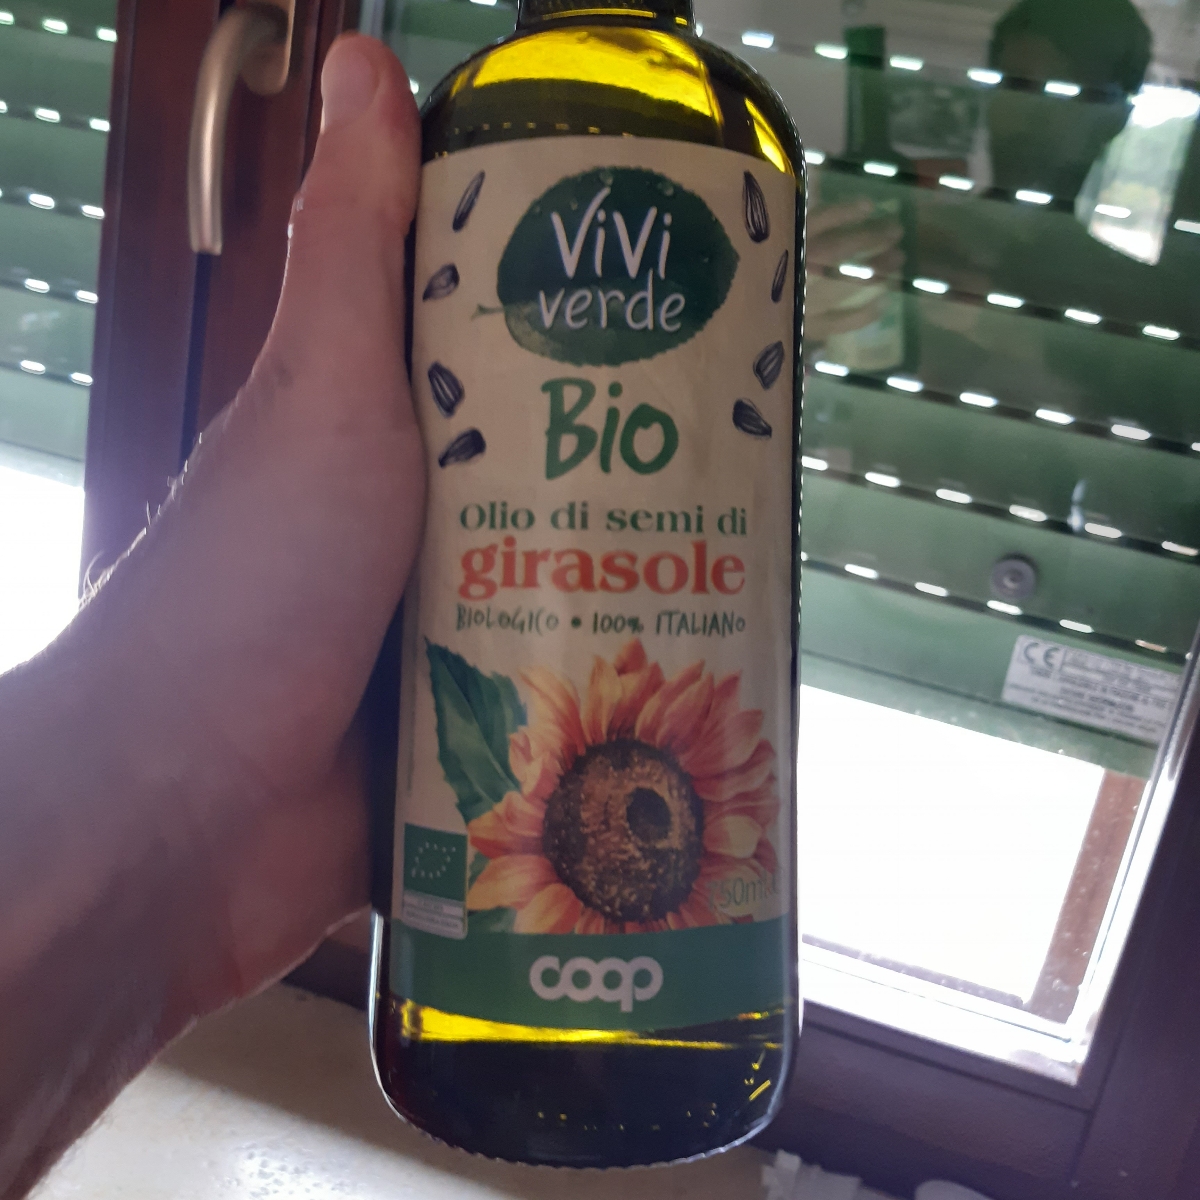 Vivi Verde Coop Olio di semi di girasole biologico Reviews | abillion